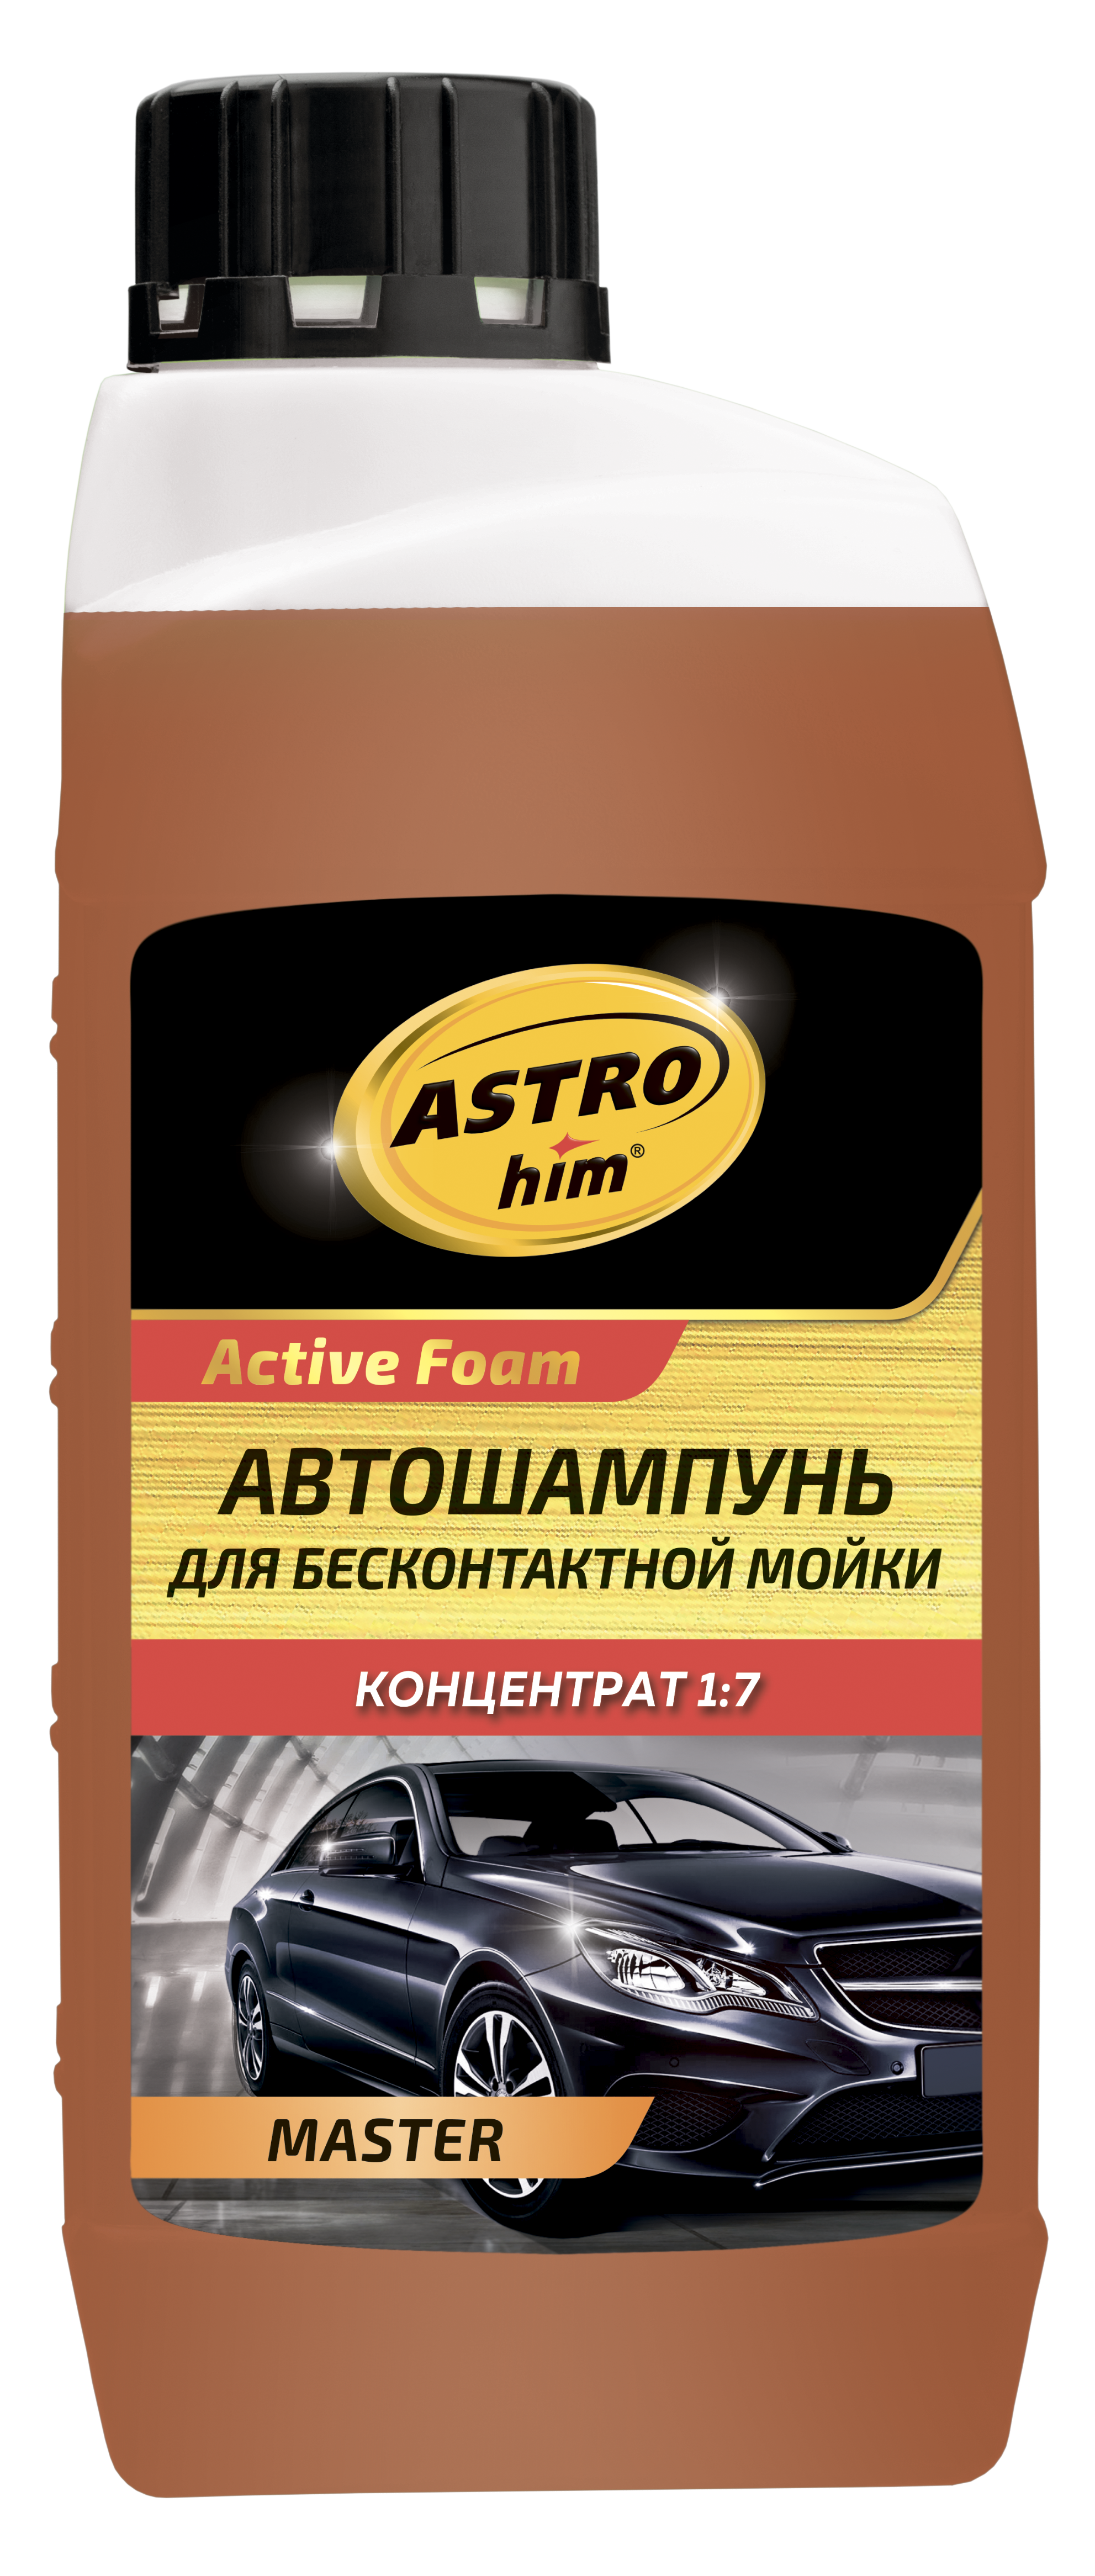 Автохимия ASTROHIM M Автошампунь для бесконтактной мойки MASTER, серия Active foam, концентрат 1:5-1:9, канистра 1 литр. AC439